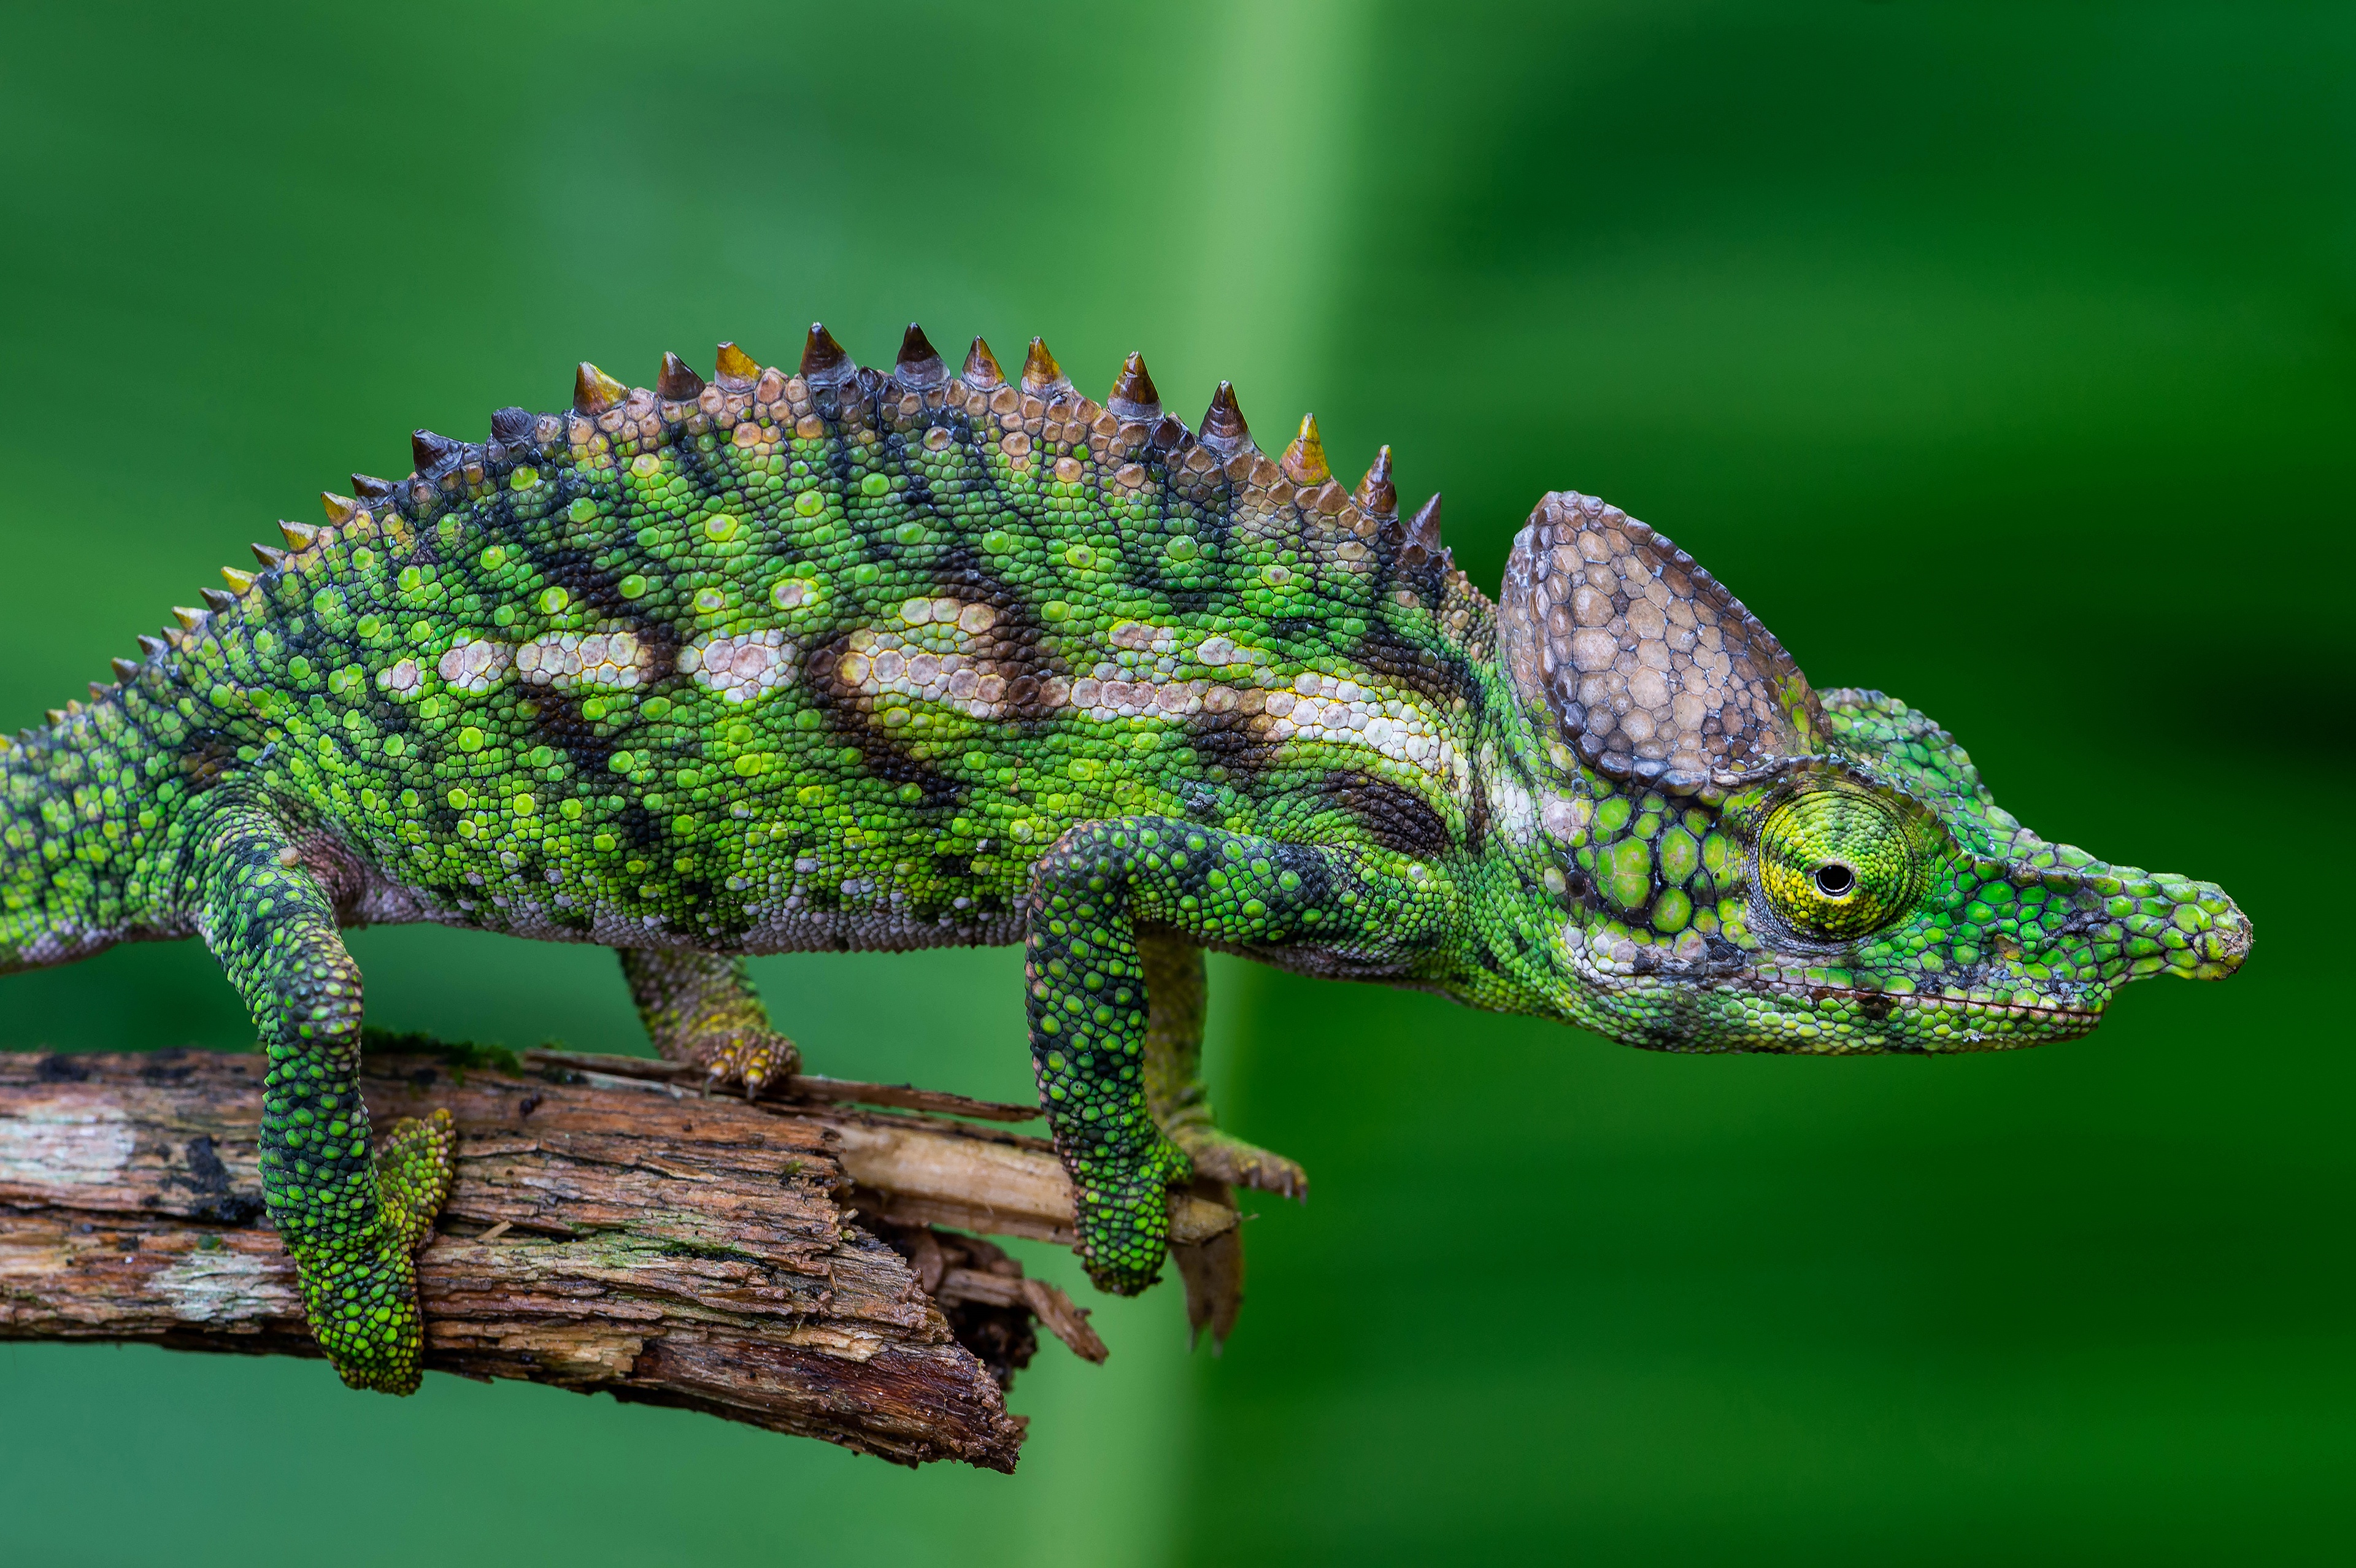 Chameleon Reptile Wildlife 3840x2556